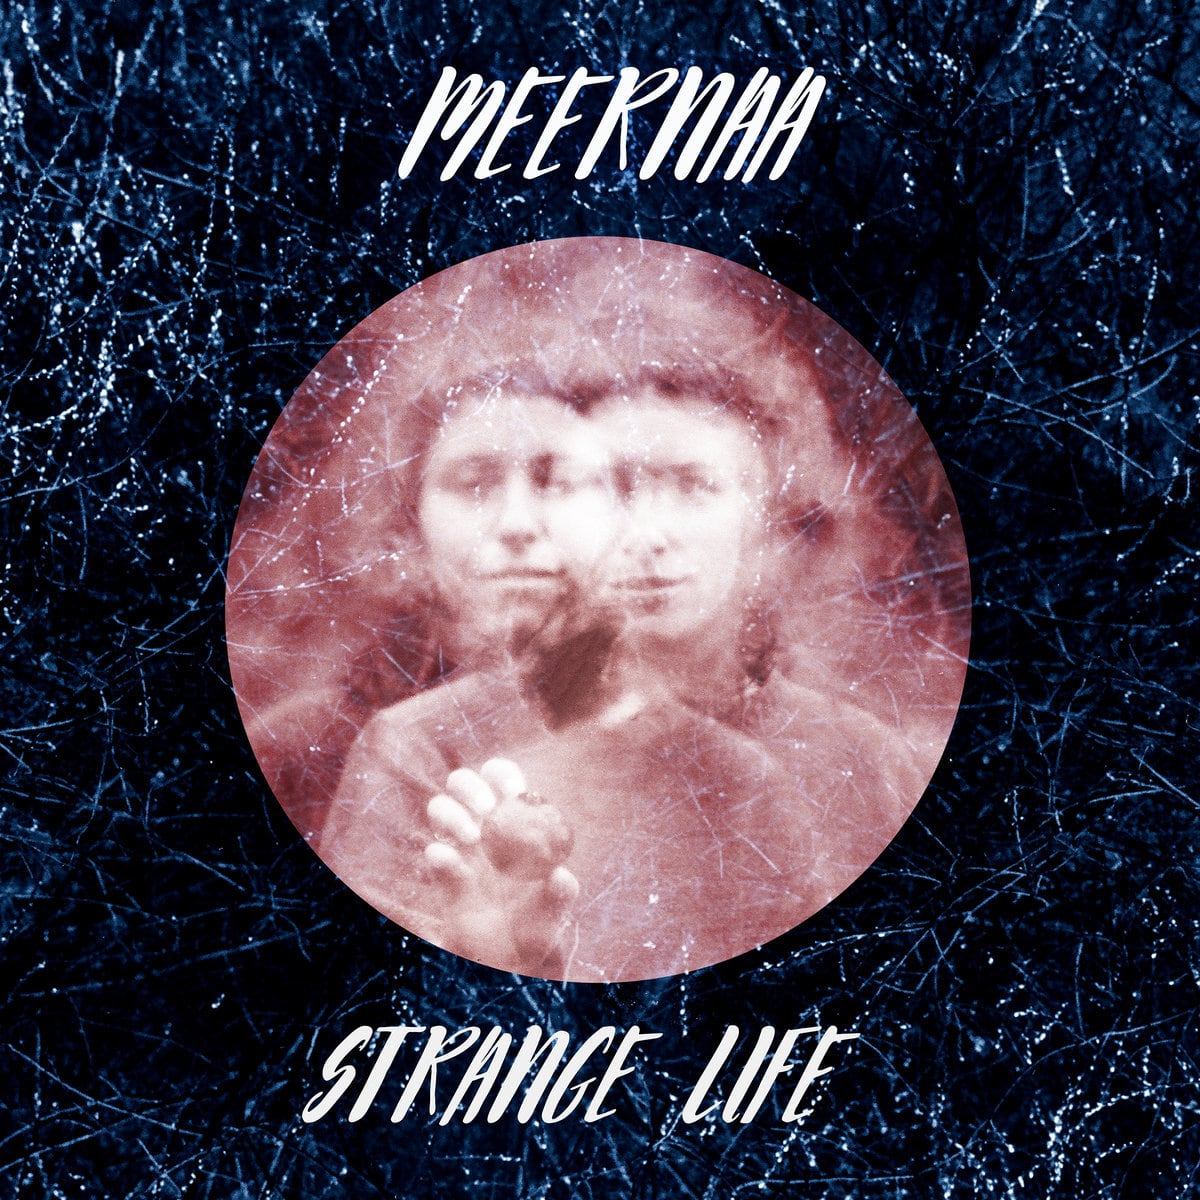 Meernaa / Strange Life（200 Ltd Cassette）